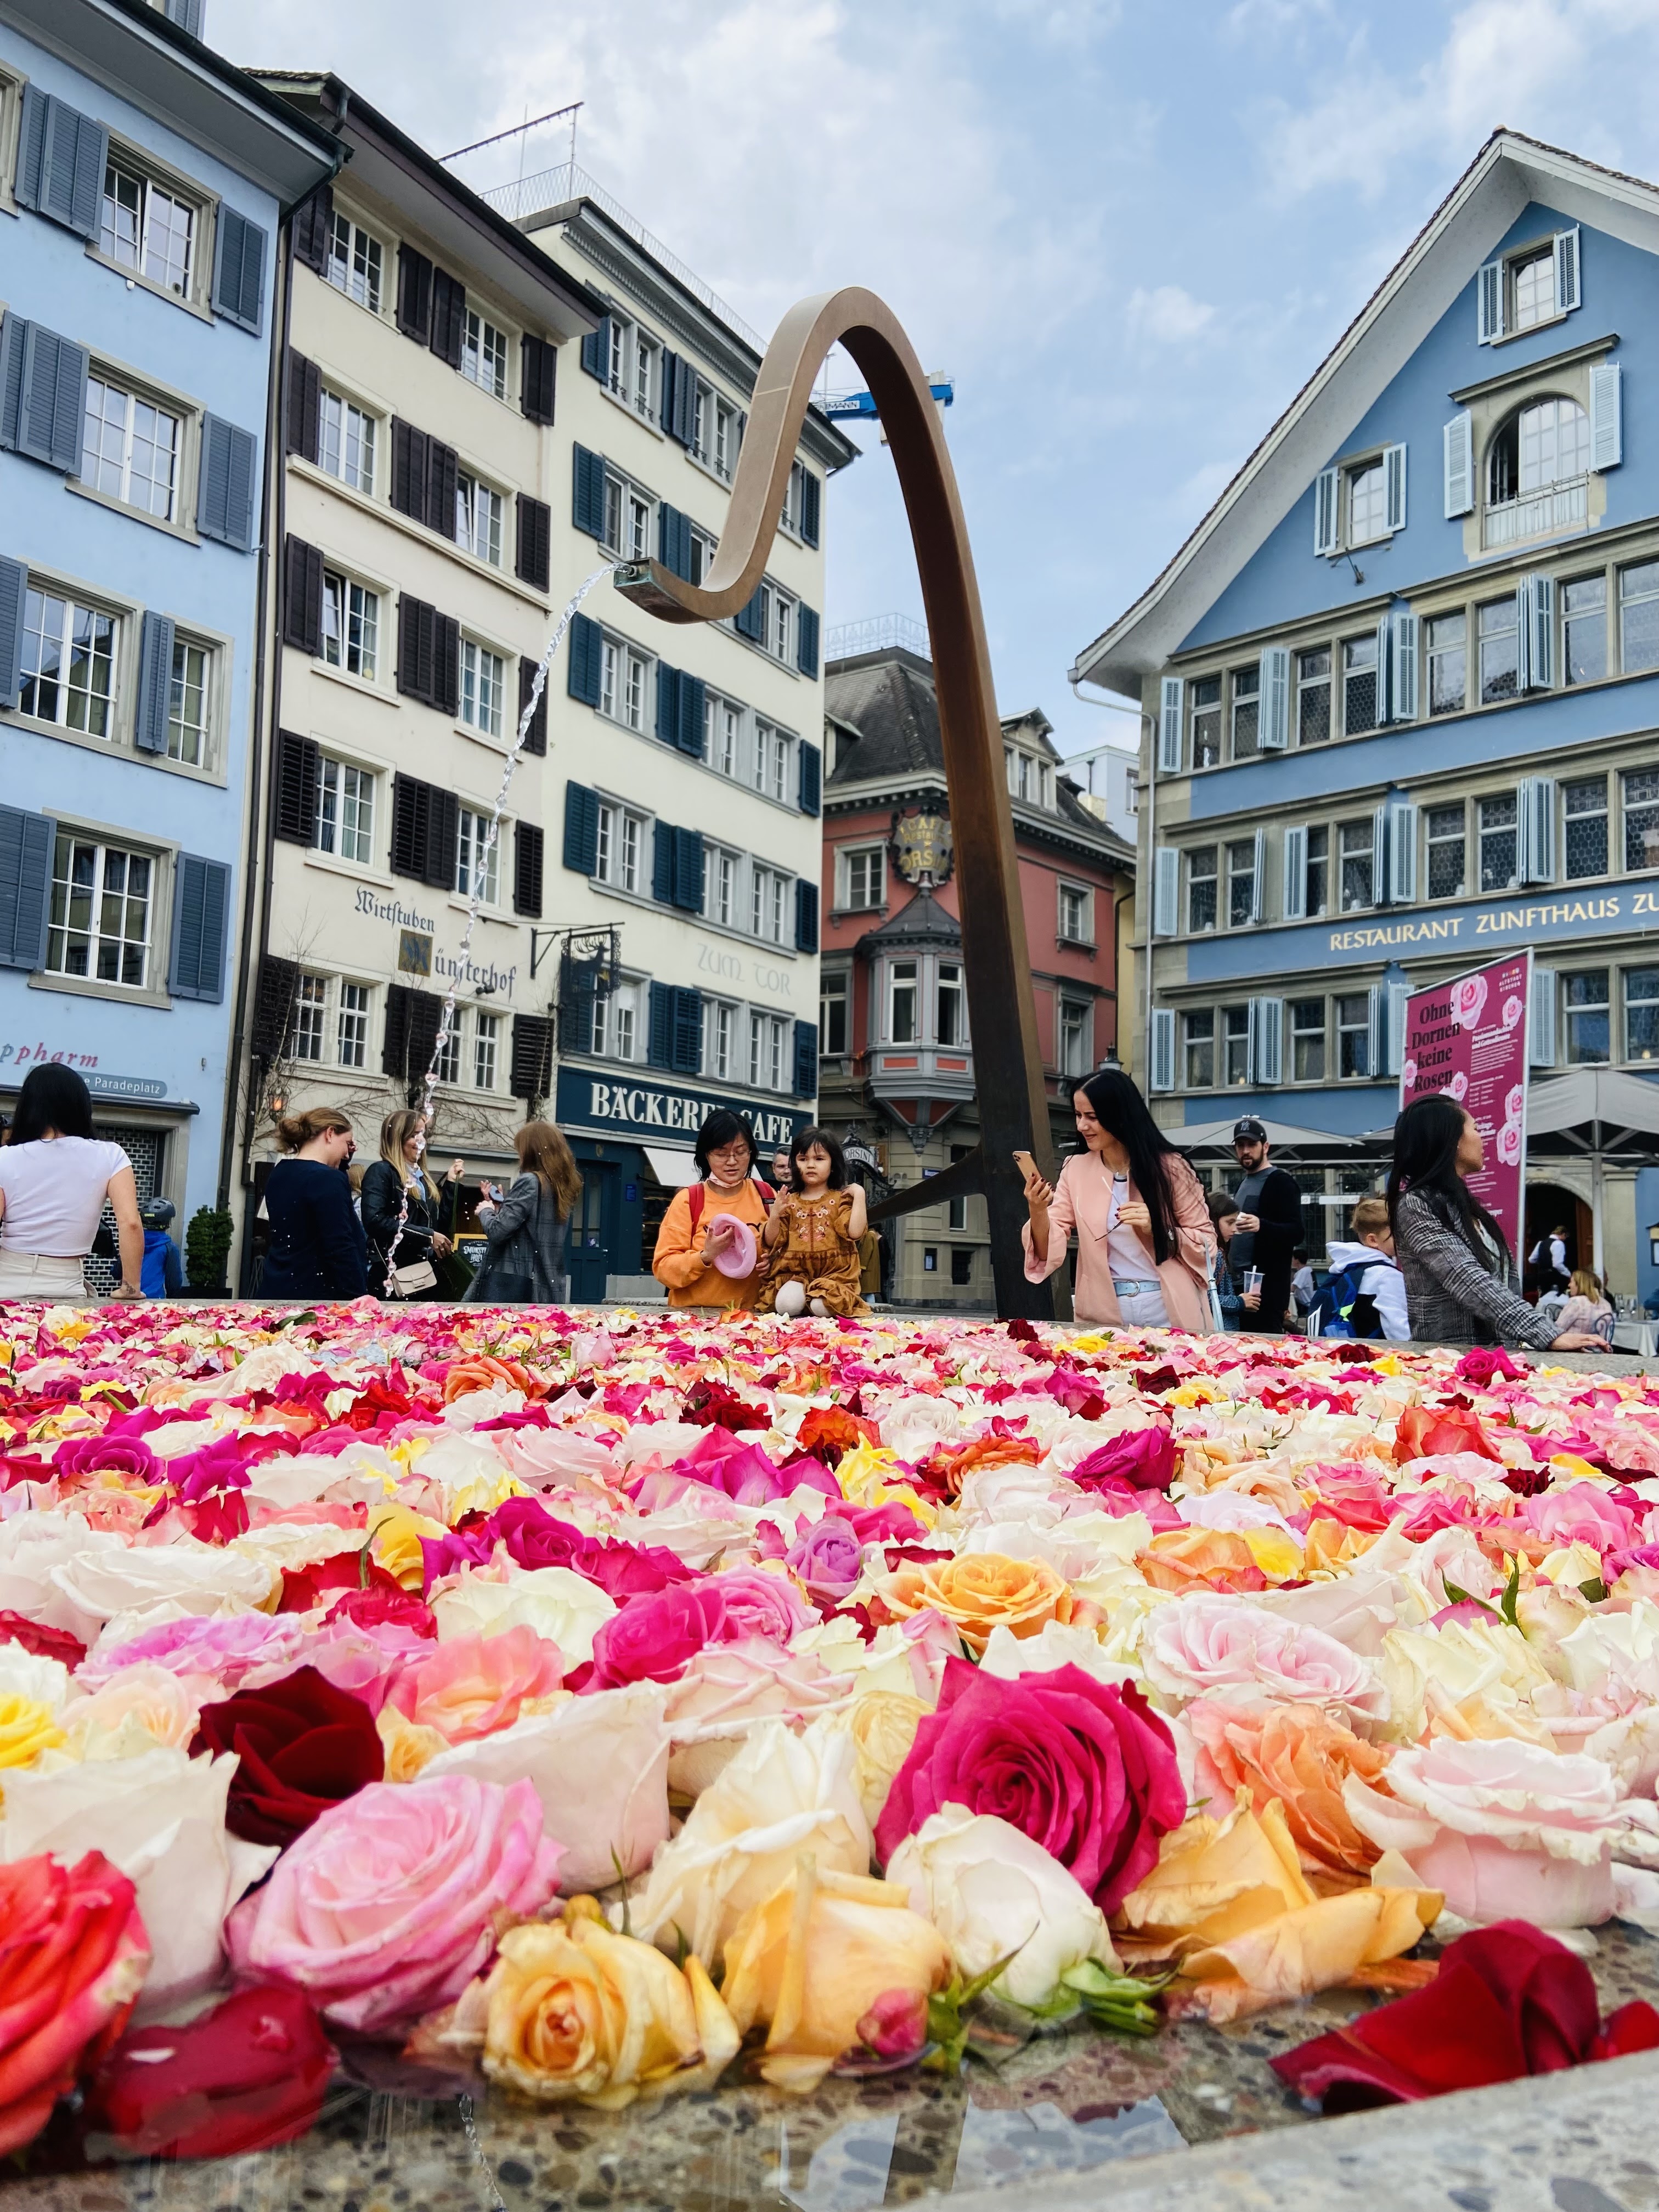 ζυρίχη ελβετία πάσχα λουλούδια συντριβάνια τριαντάφυλλα κέντρο πέτρος εκδρομή